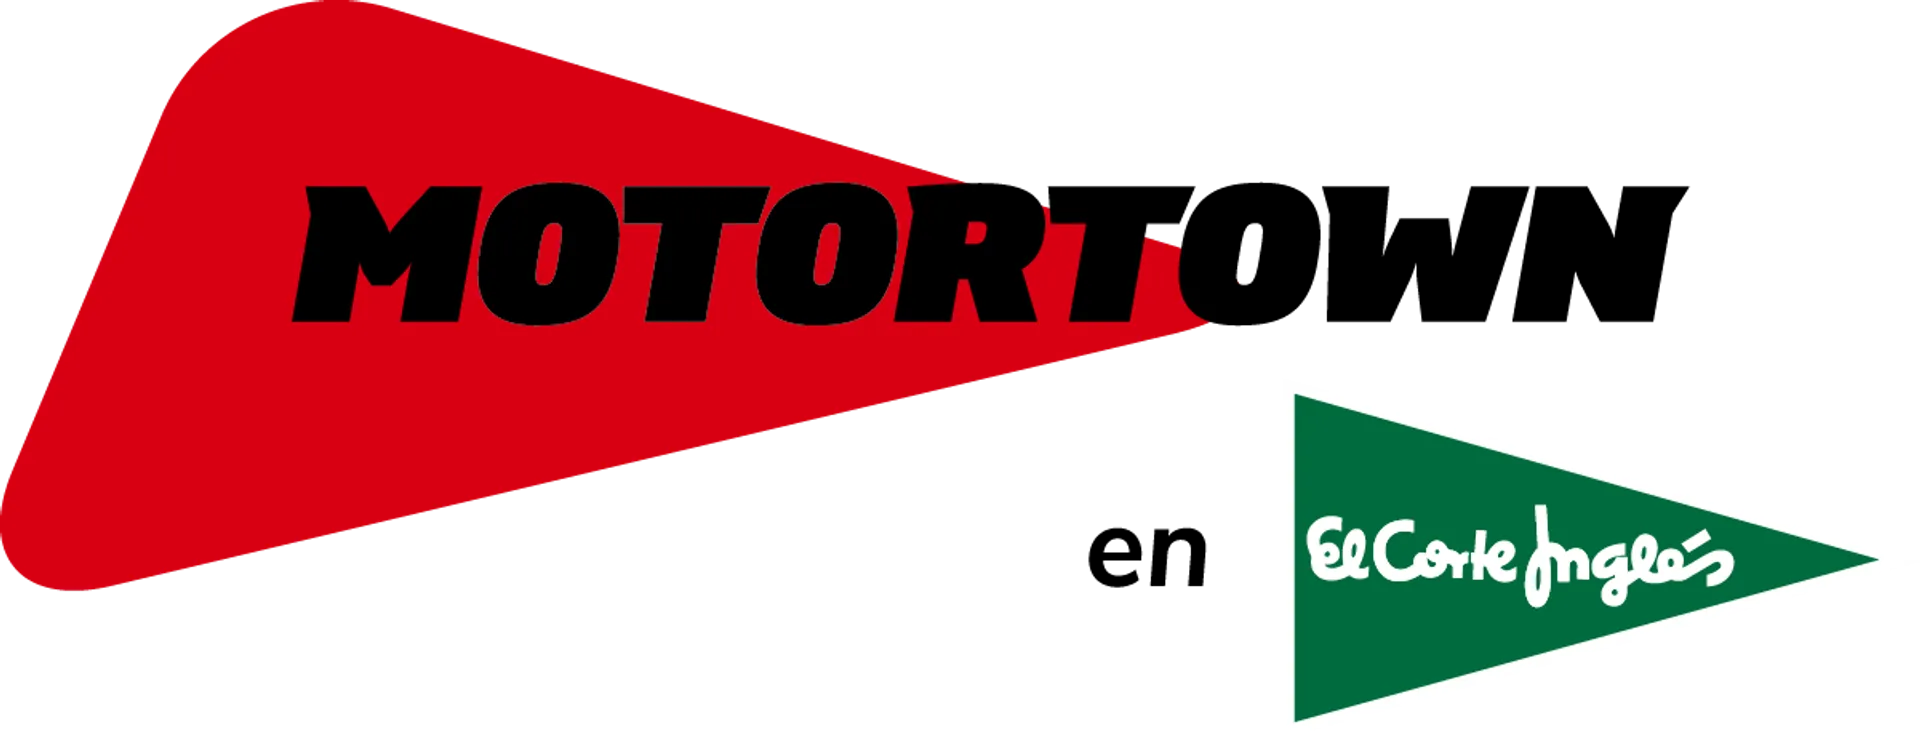 MOTORTOWN logo